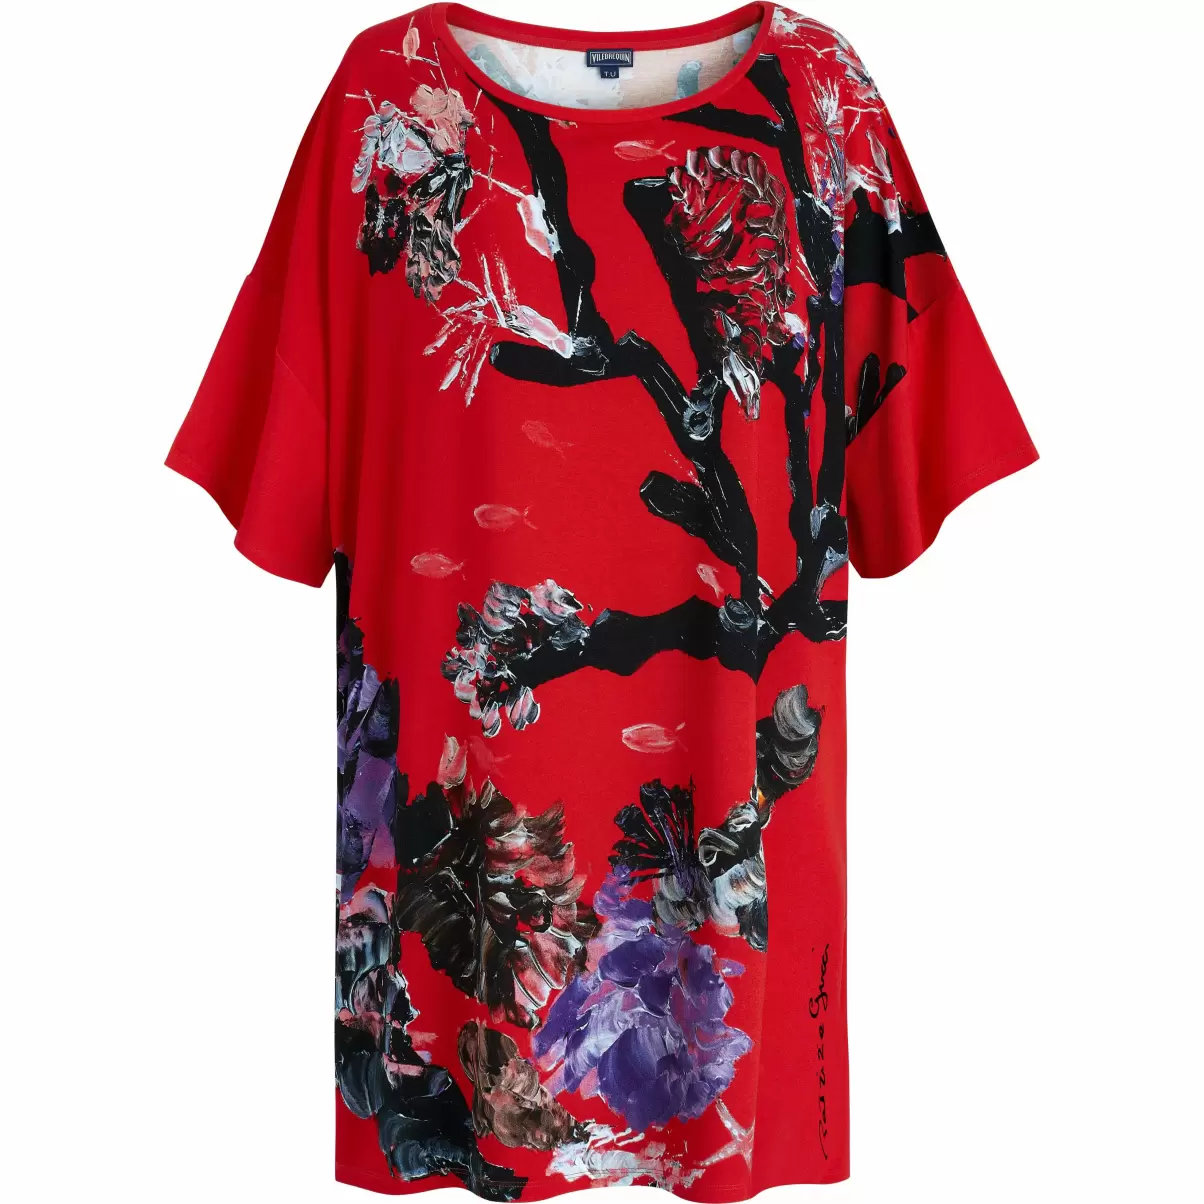 Kleider Material Damen Spring Flower Maxikleid Aus Viskose Für Damen - Vilebrequin X Patrizia Gucci Mohnrot / Rot - 3